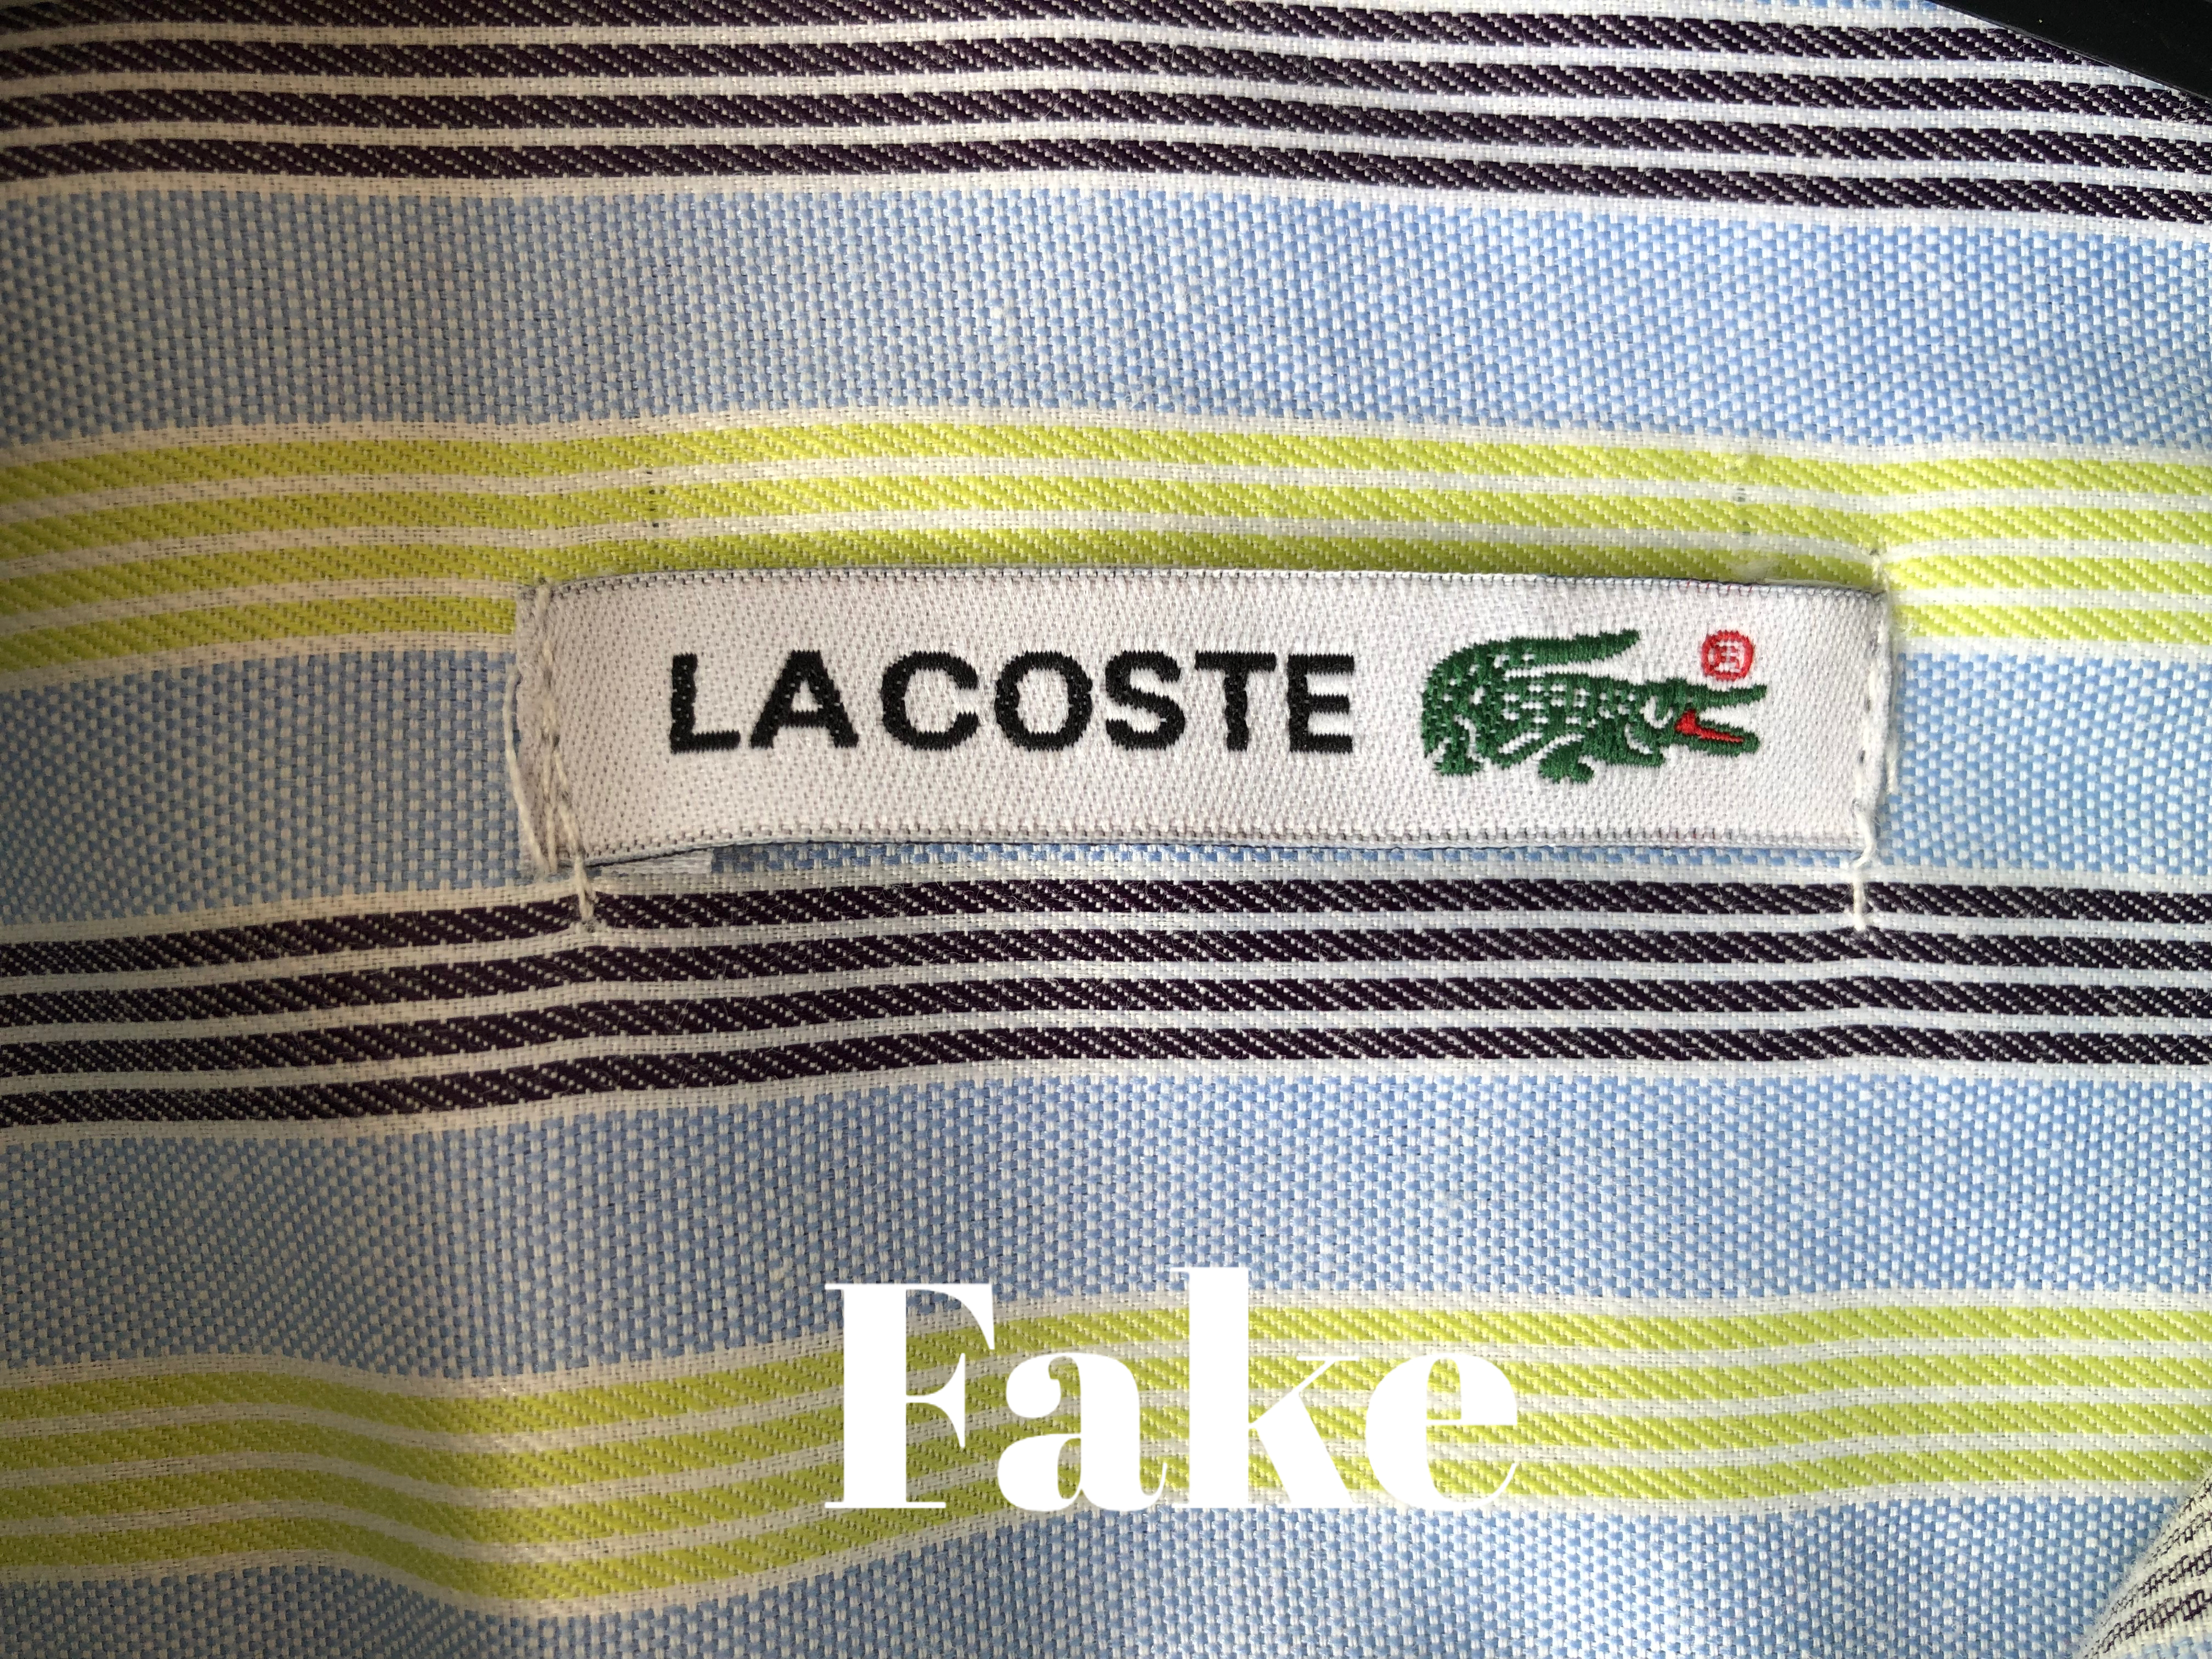 lacoste shirt original vs fake